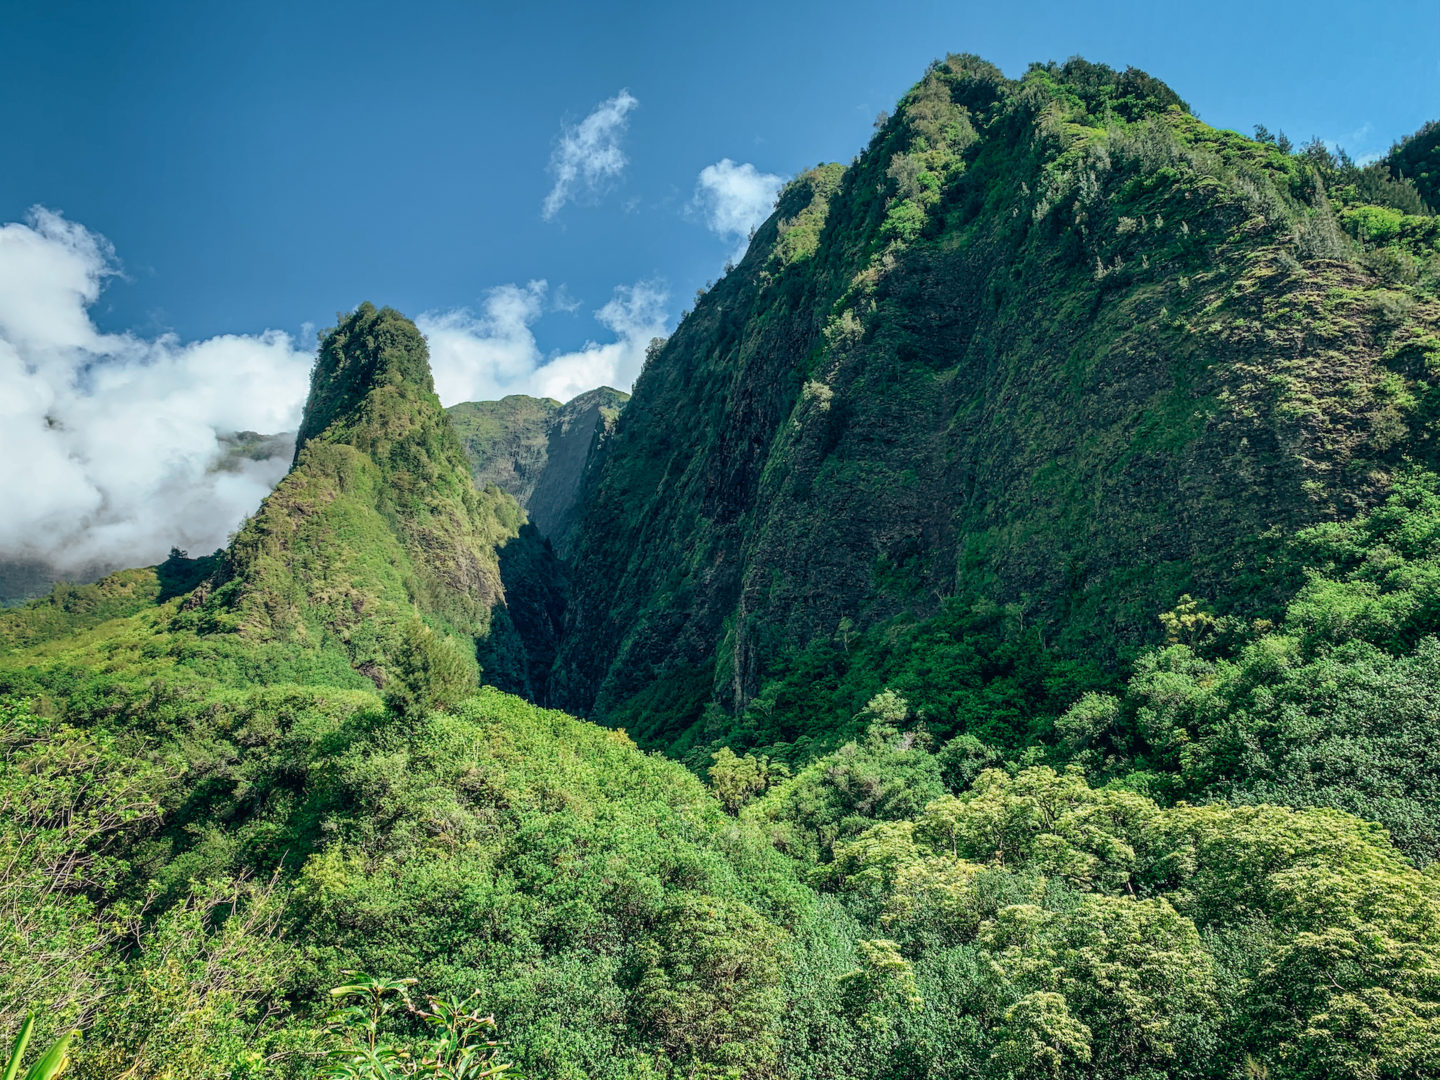 'Iao Needle - 'Iao Valley, Maui Hawai'i